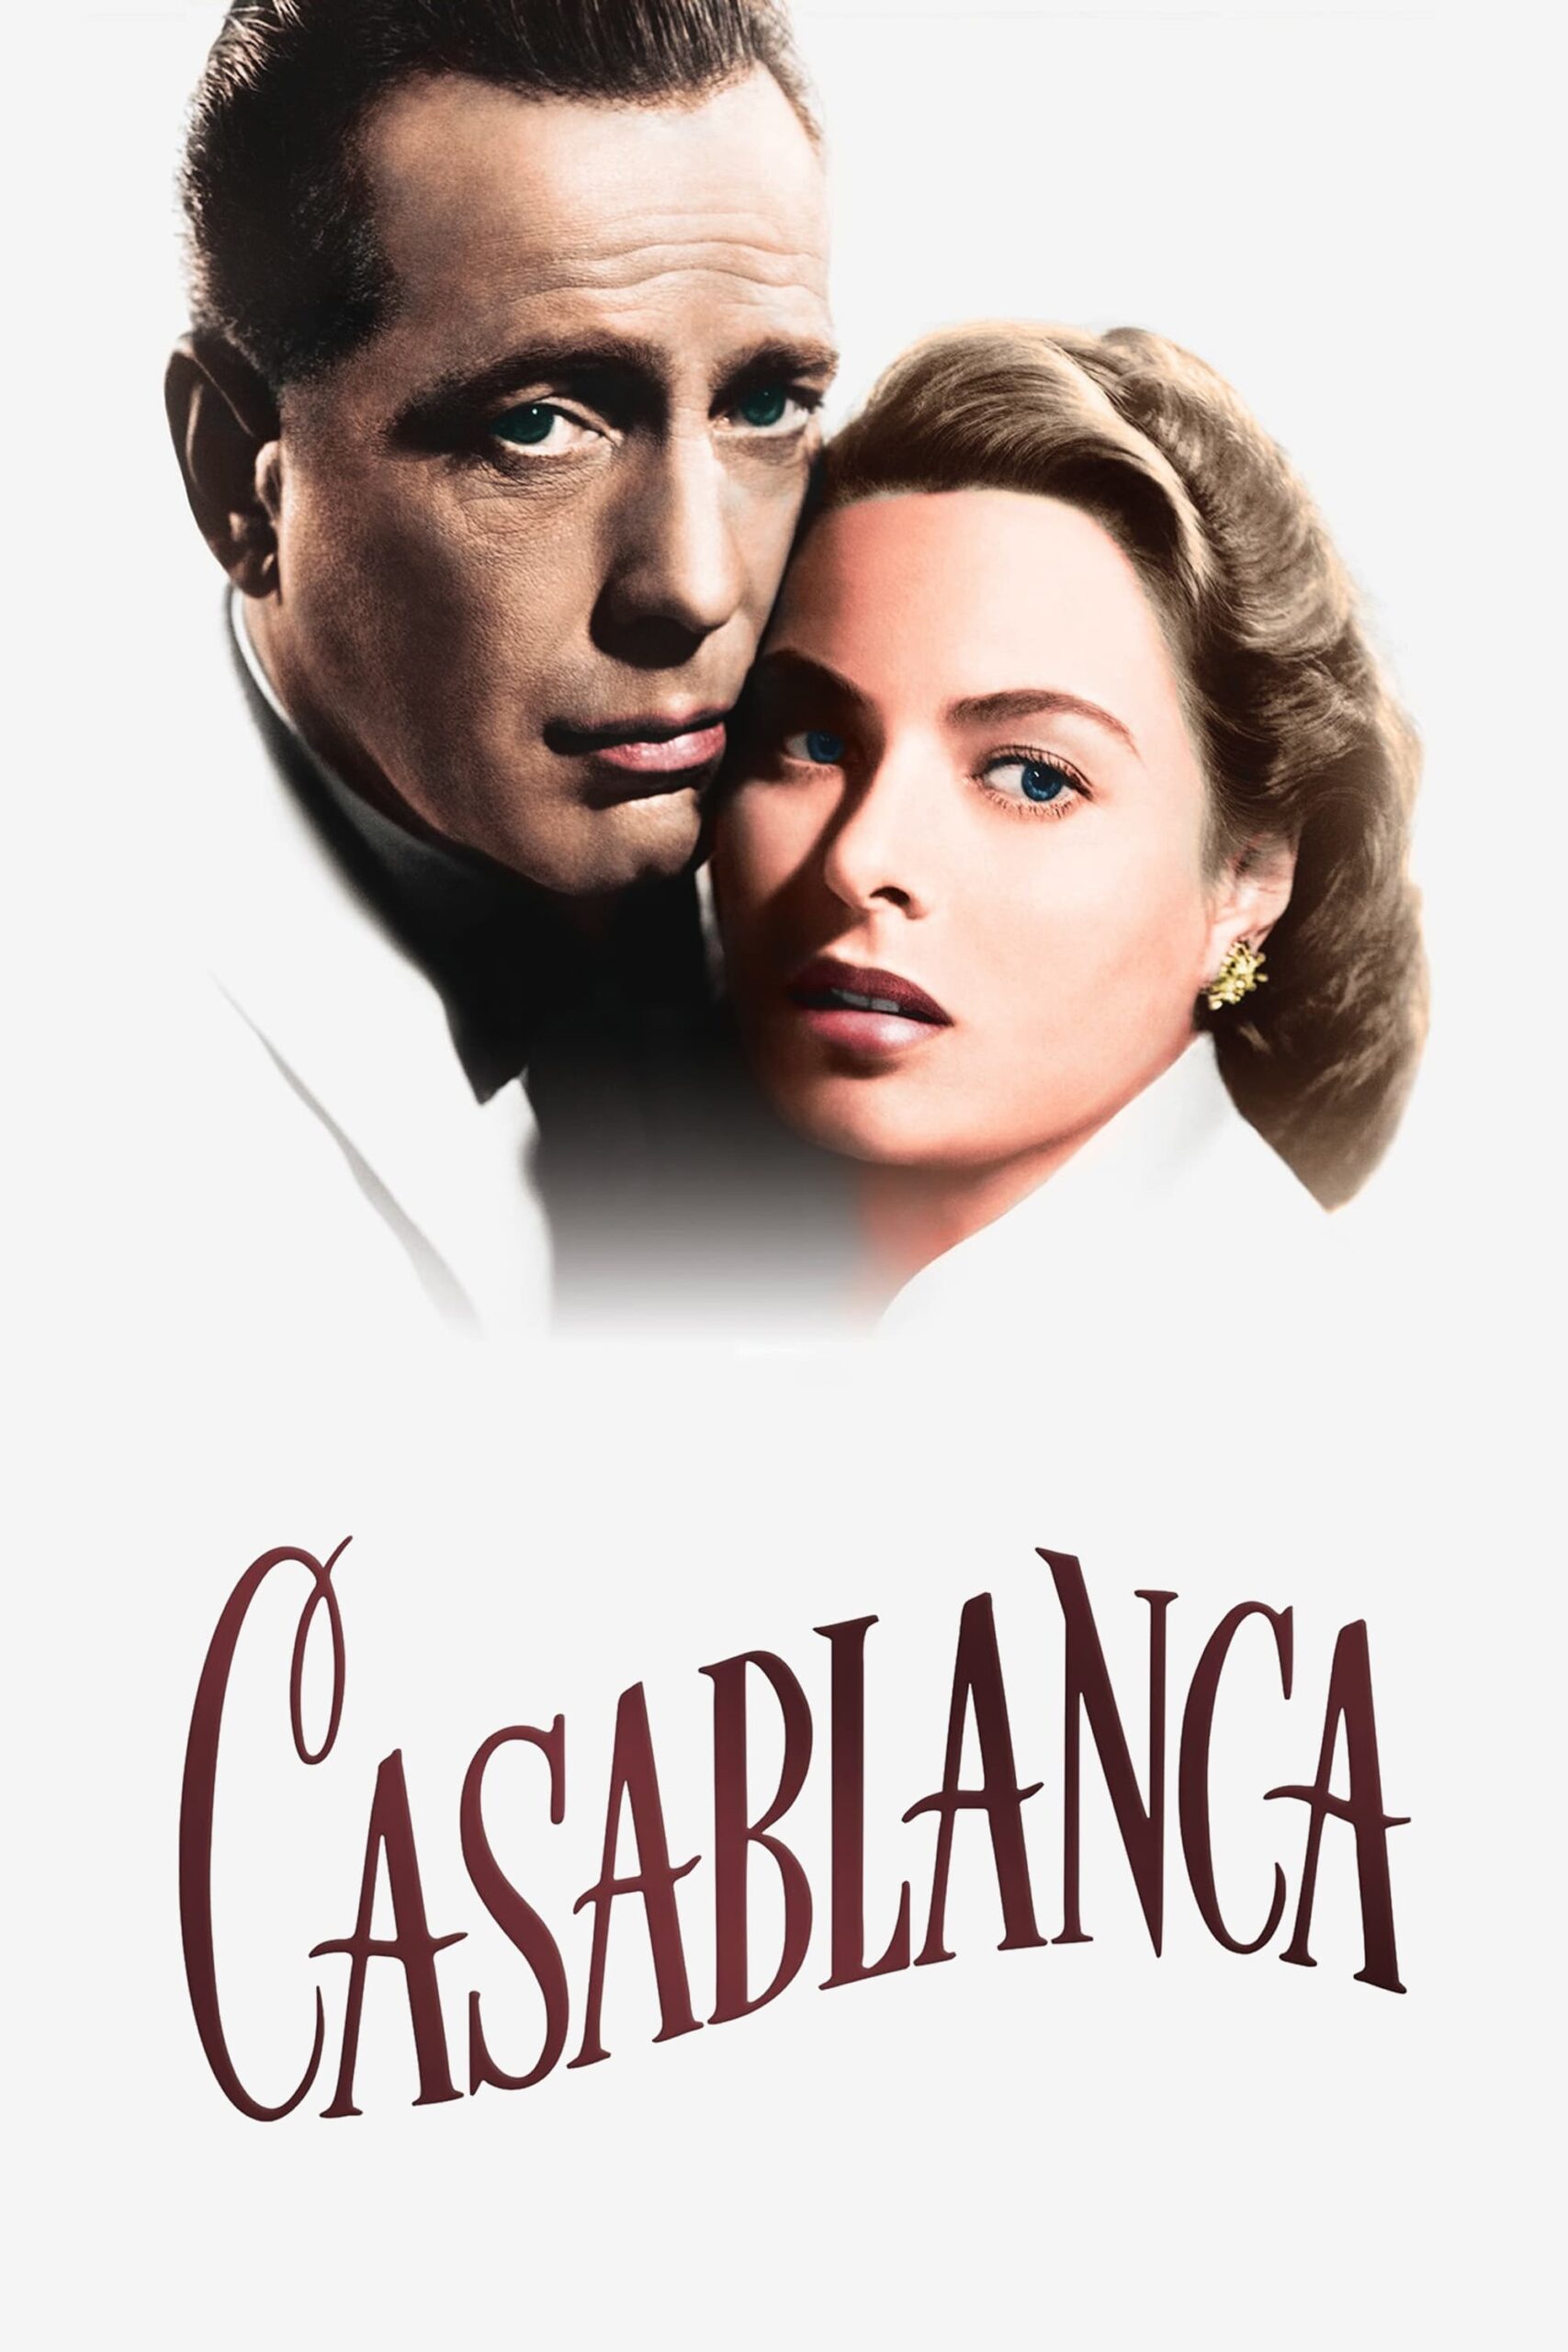 دانلود فیلم Casablanca 1942 کازابلانکا